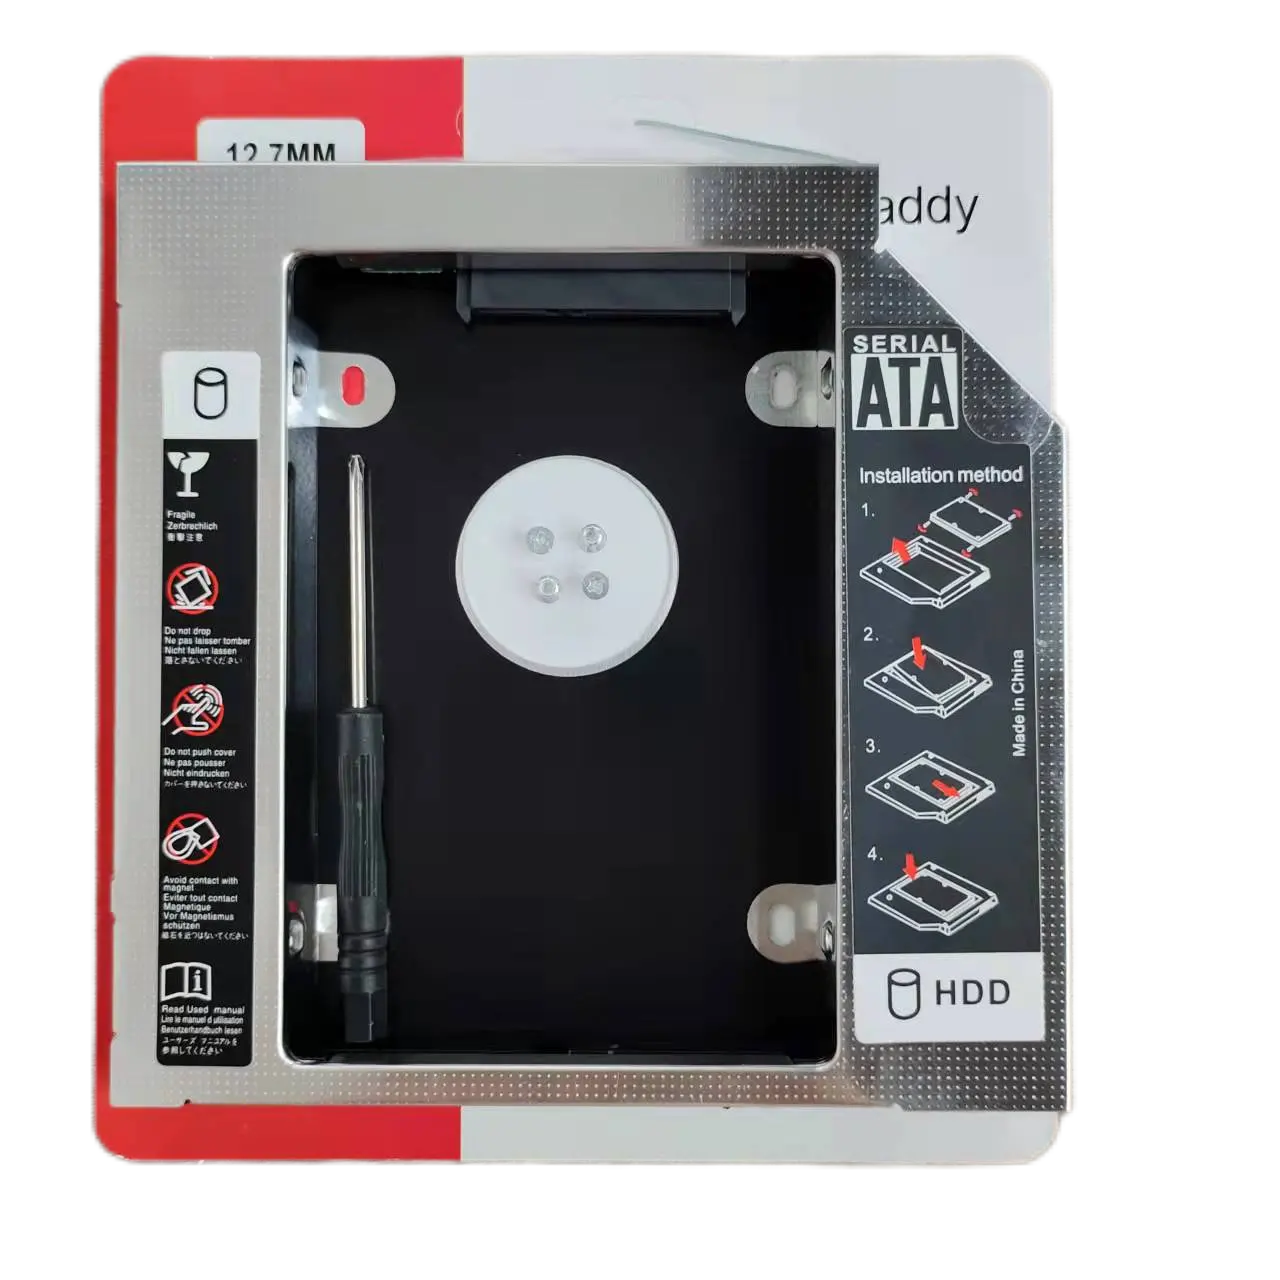 คุณภาพดีอลูมิเนียม Universal อินเทอร์เฟซ SATA 12.7มม.2.5 "Hard Disk Drive แล็ปท็อป CD/DVD 2nd ฮาร์ดดิสก์ SSD Optibay แคดดี้